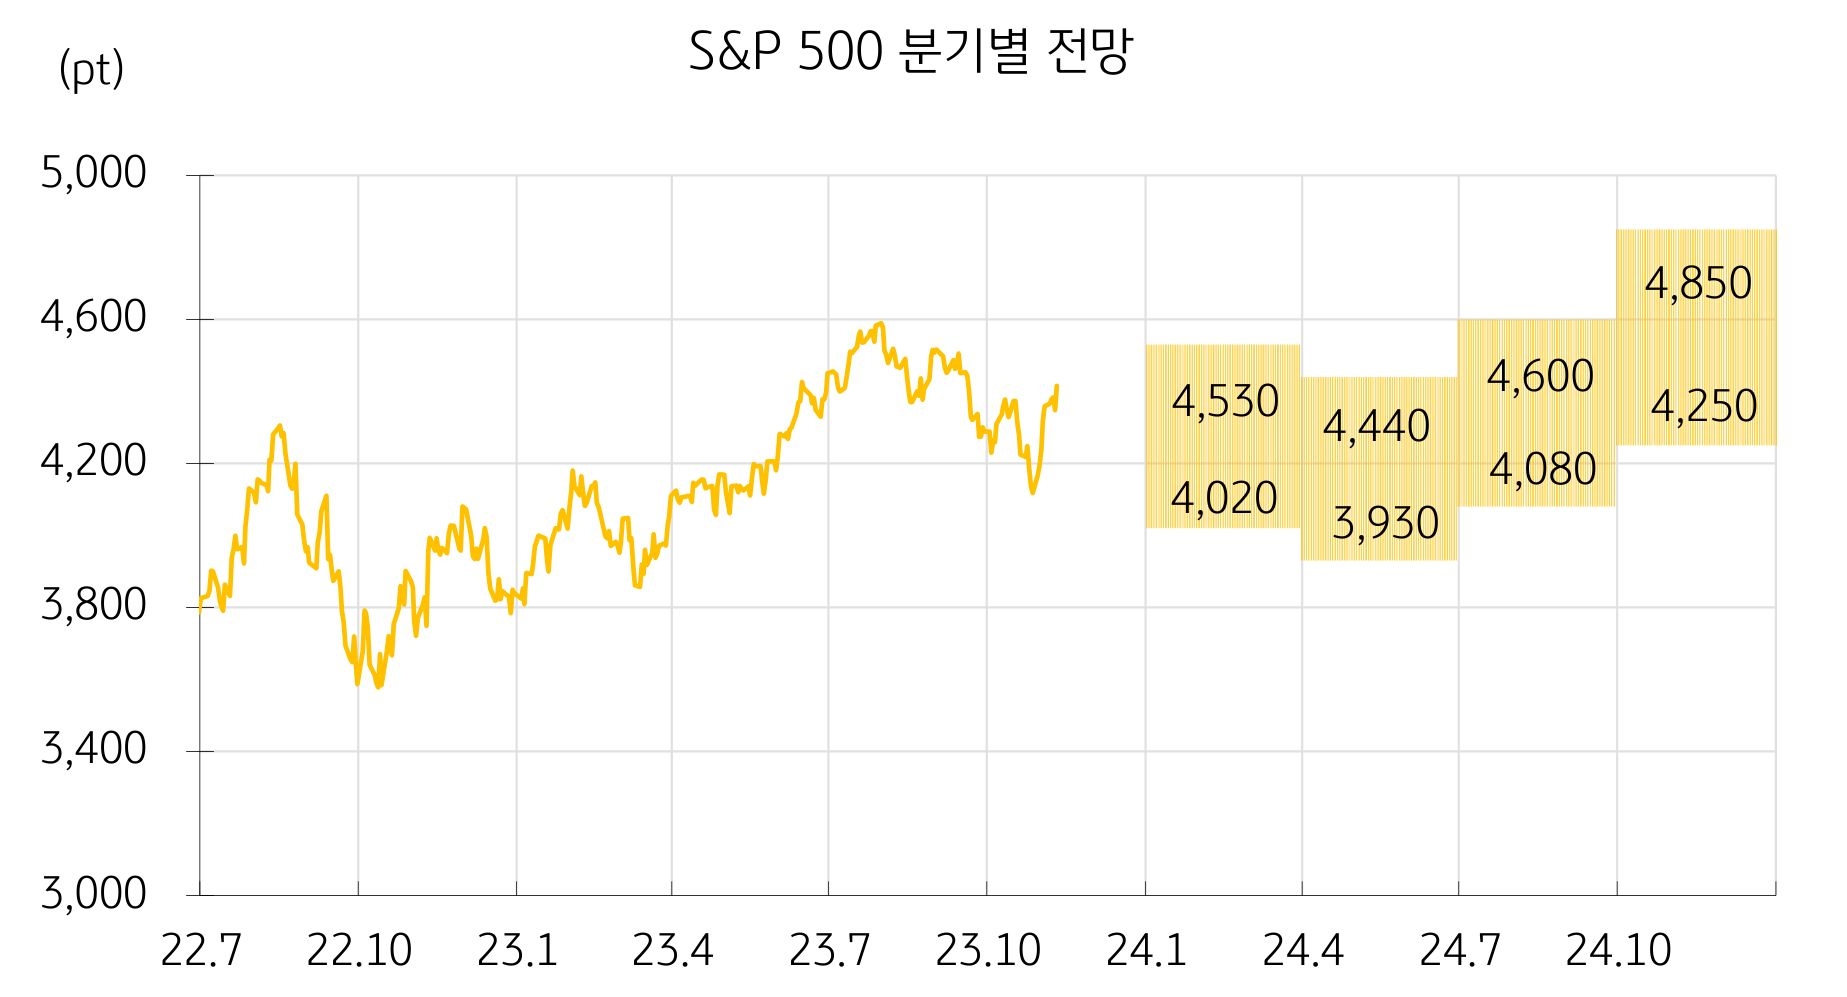 S&P 500을 분기별로 전망한 선 그래프. 기간은 22년 7월부터 24년 10월 이후까지 반영되어있다.